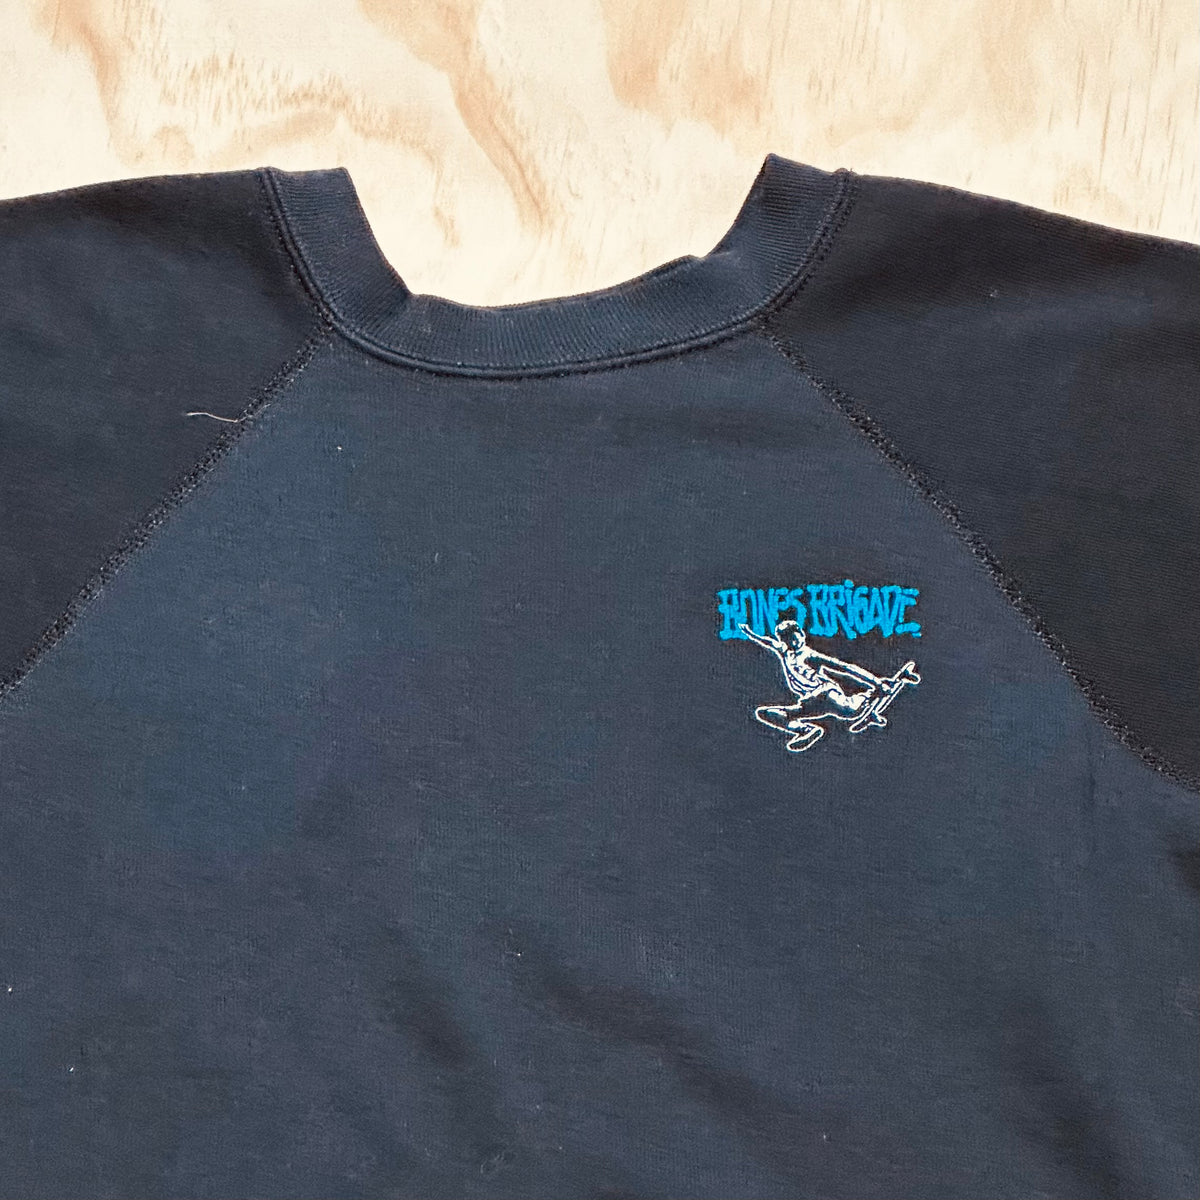 Vintage 80's Powell Peralta Bones Brigade Black Crewneck Sweatshirt